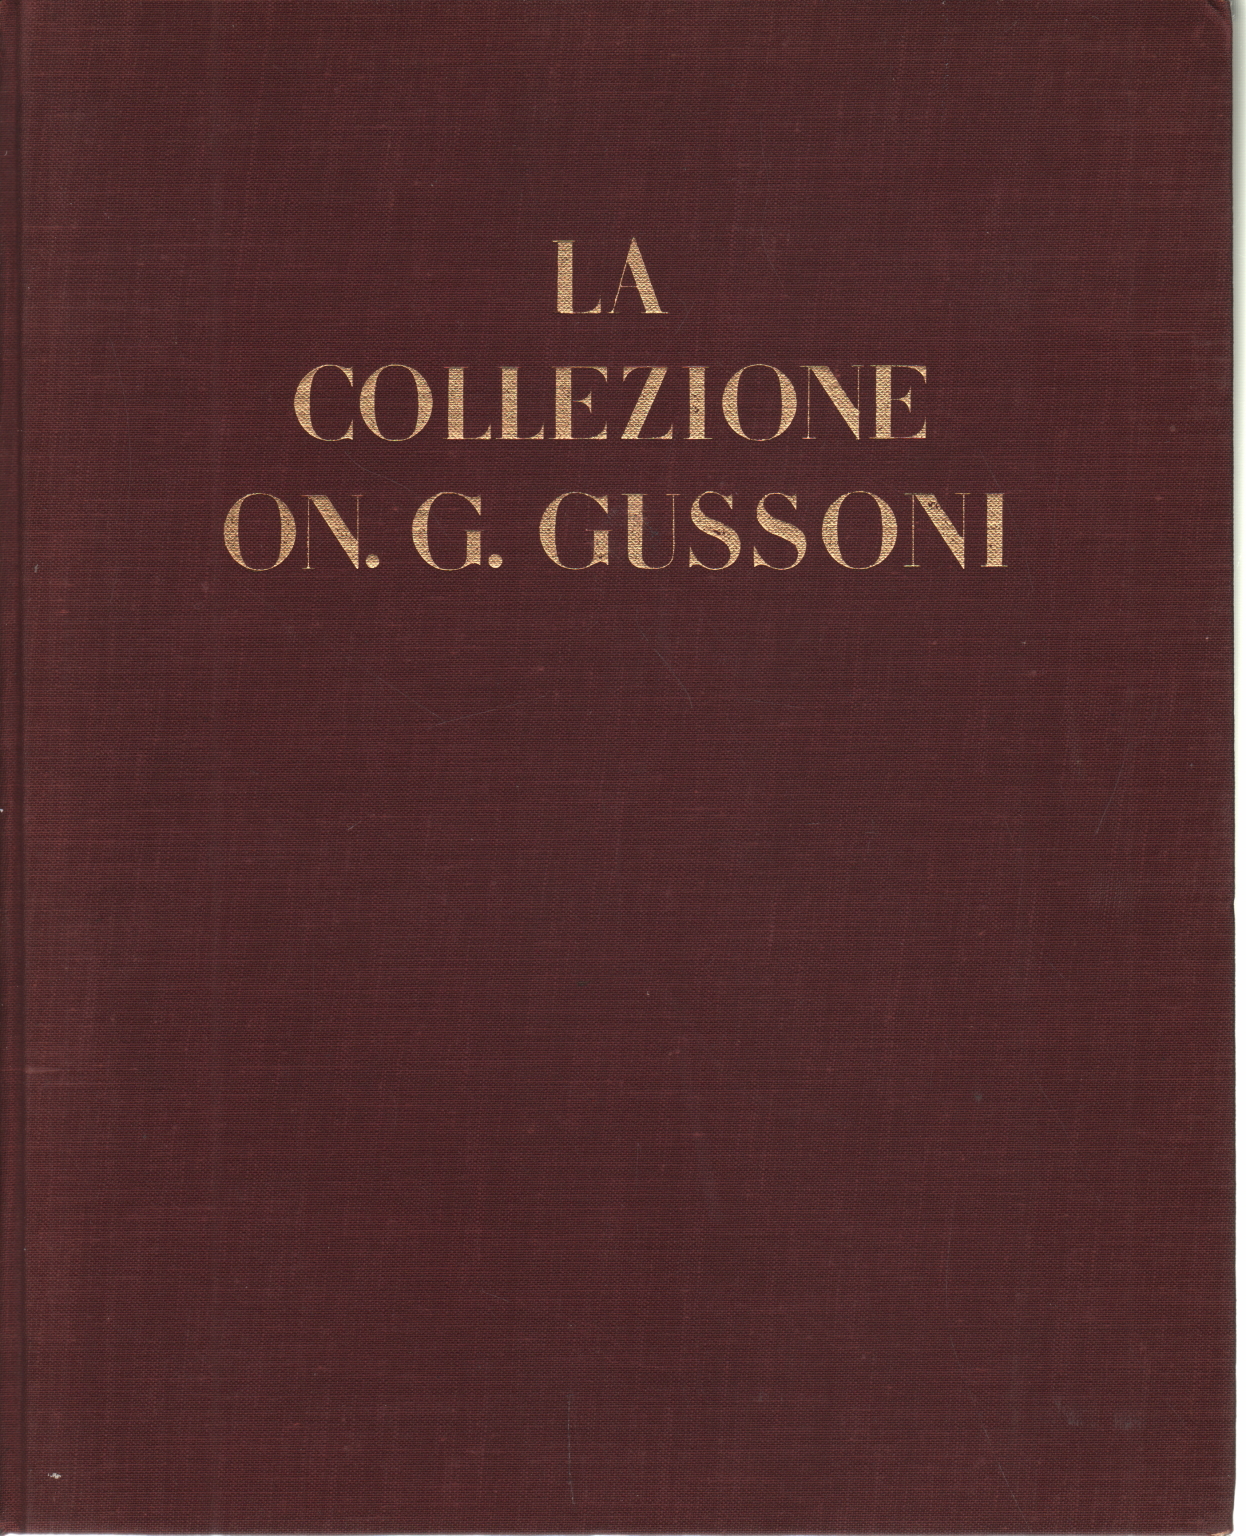 Die On. G. Gussoni-Sammlung